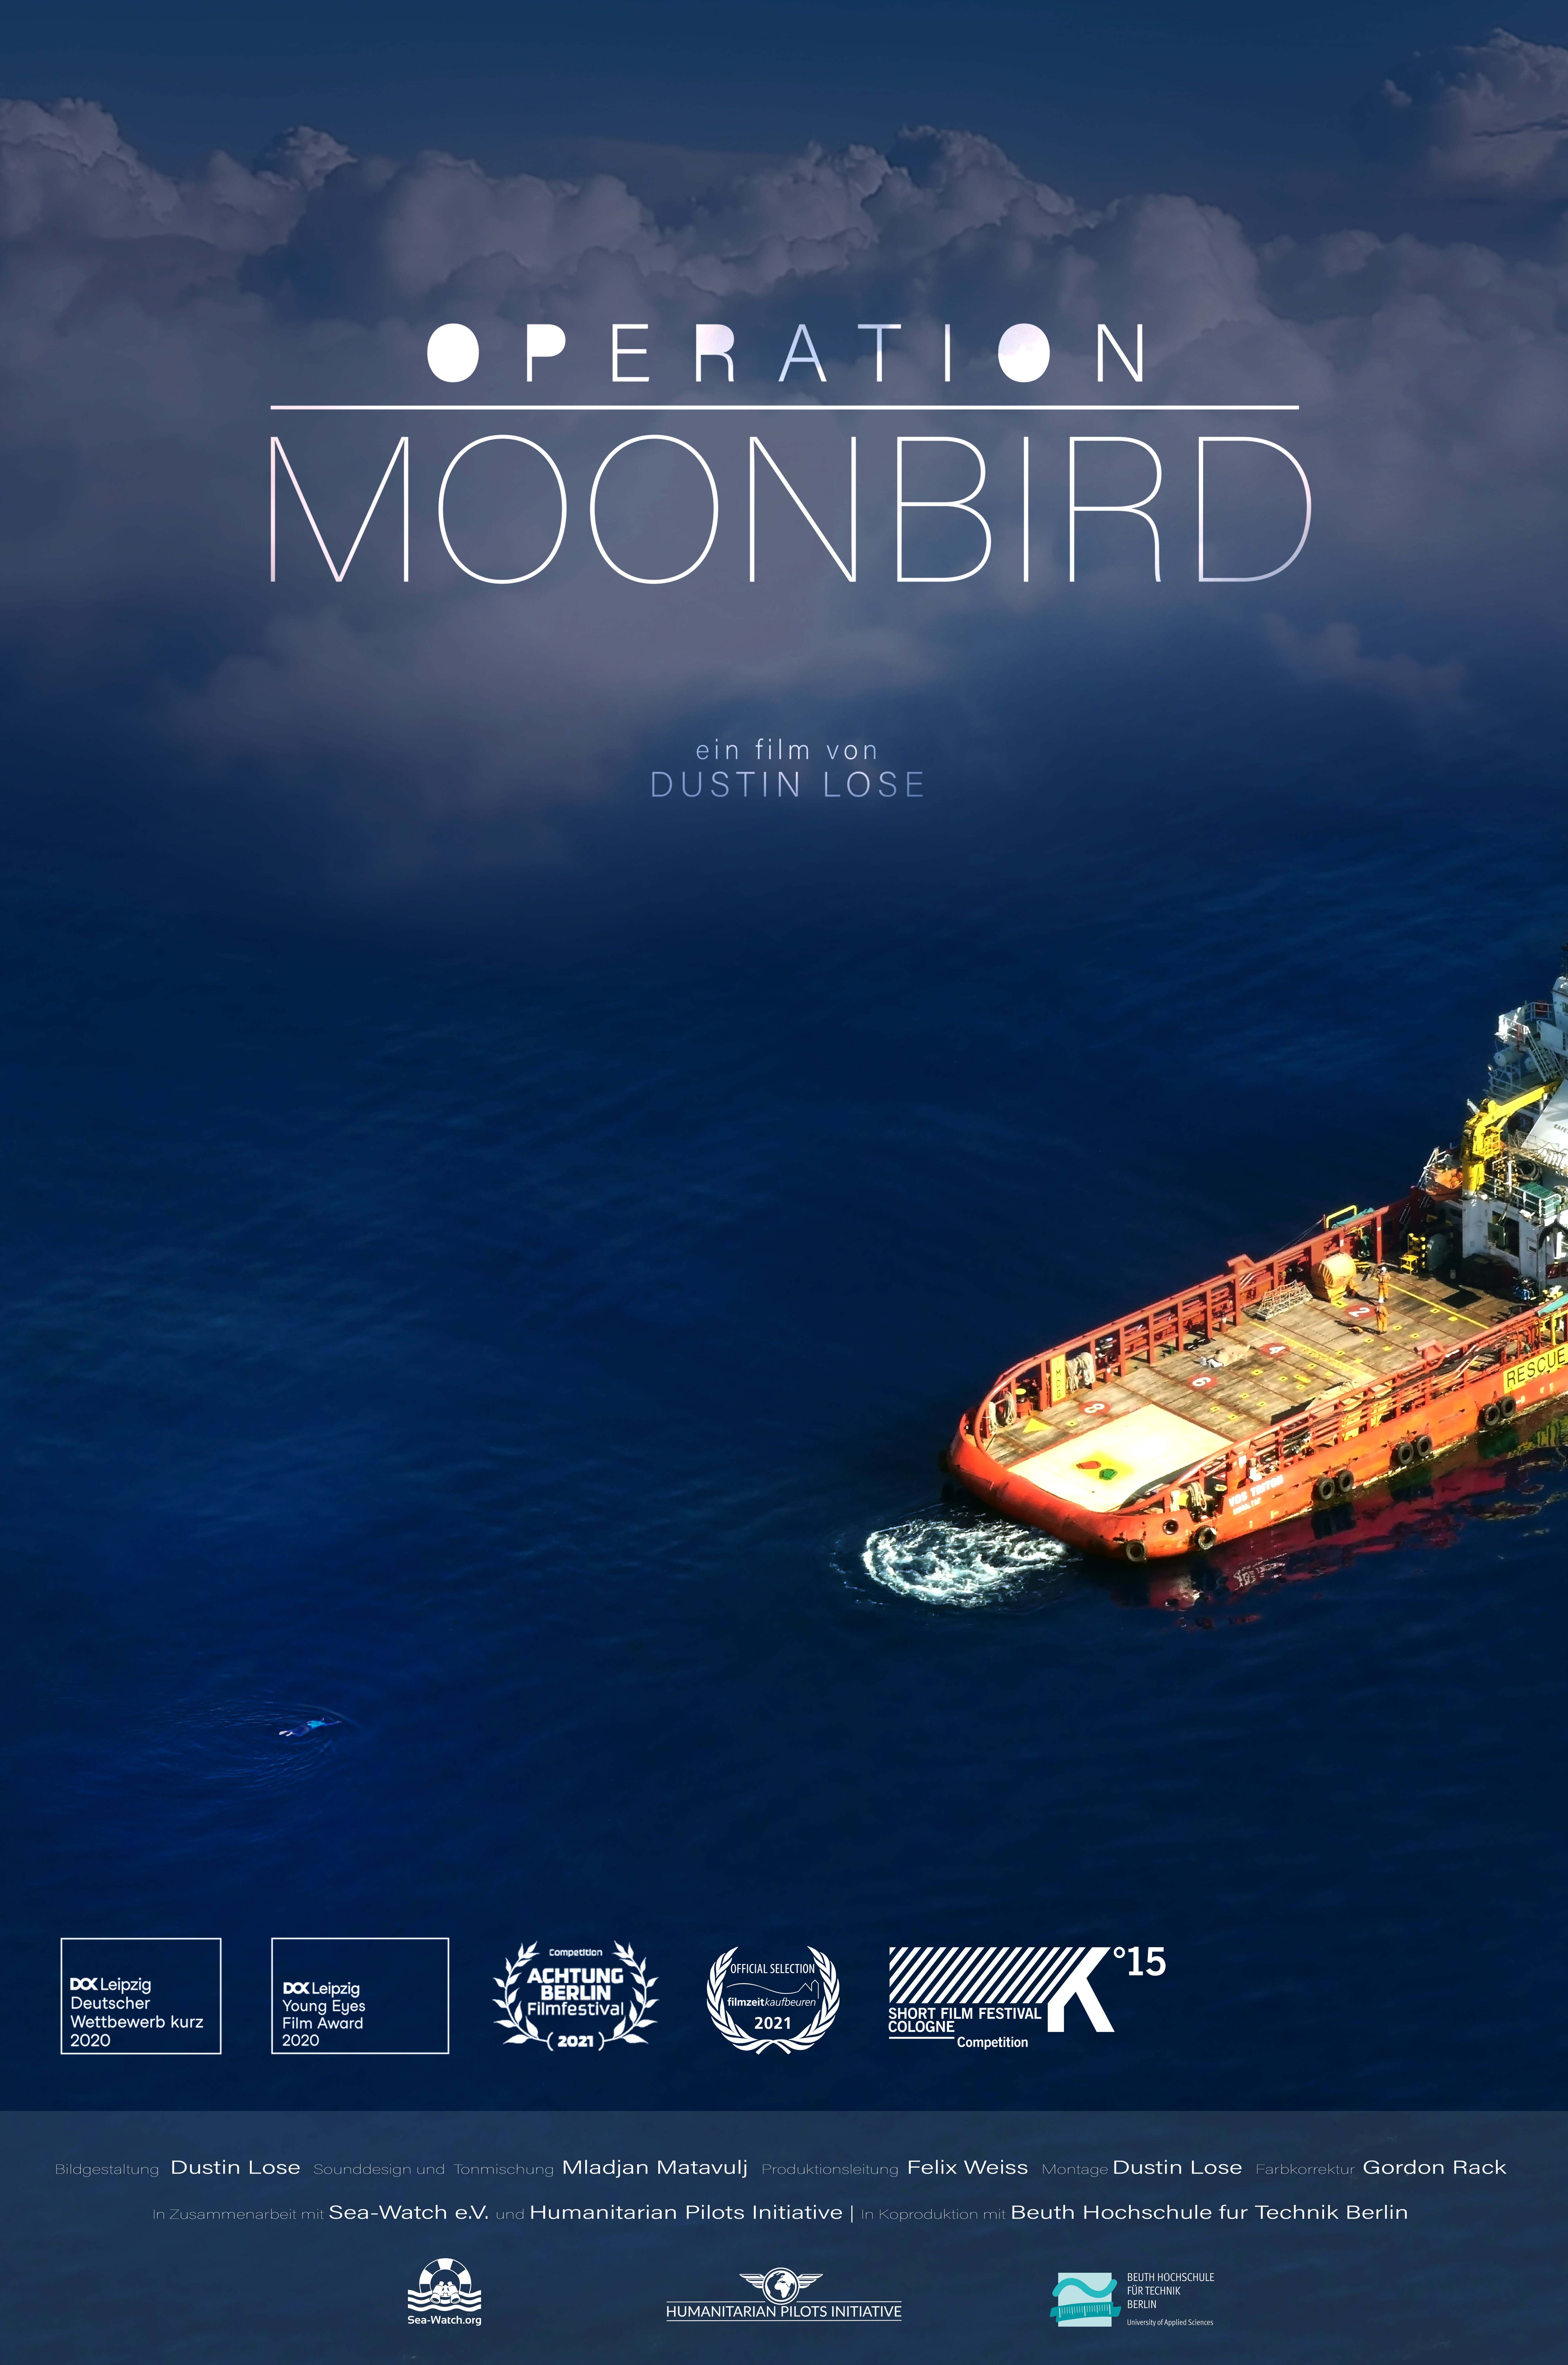 Operation Moonbird – Merc 21 Settembre Ore 20 Cinema L’Aquila